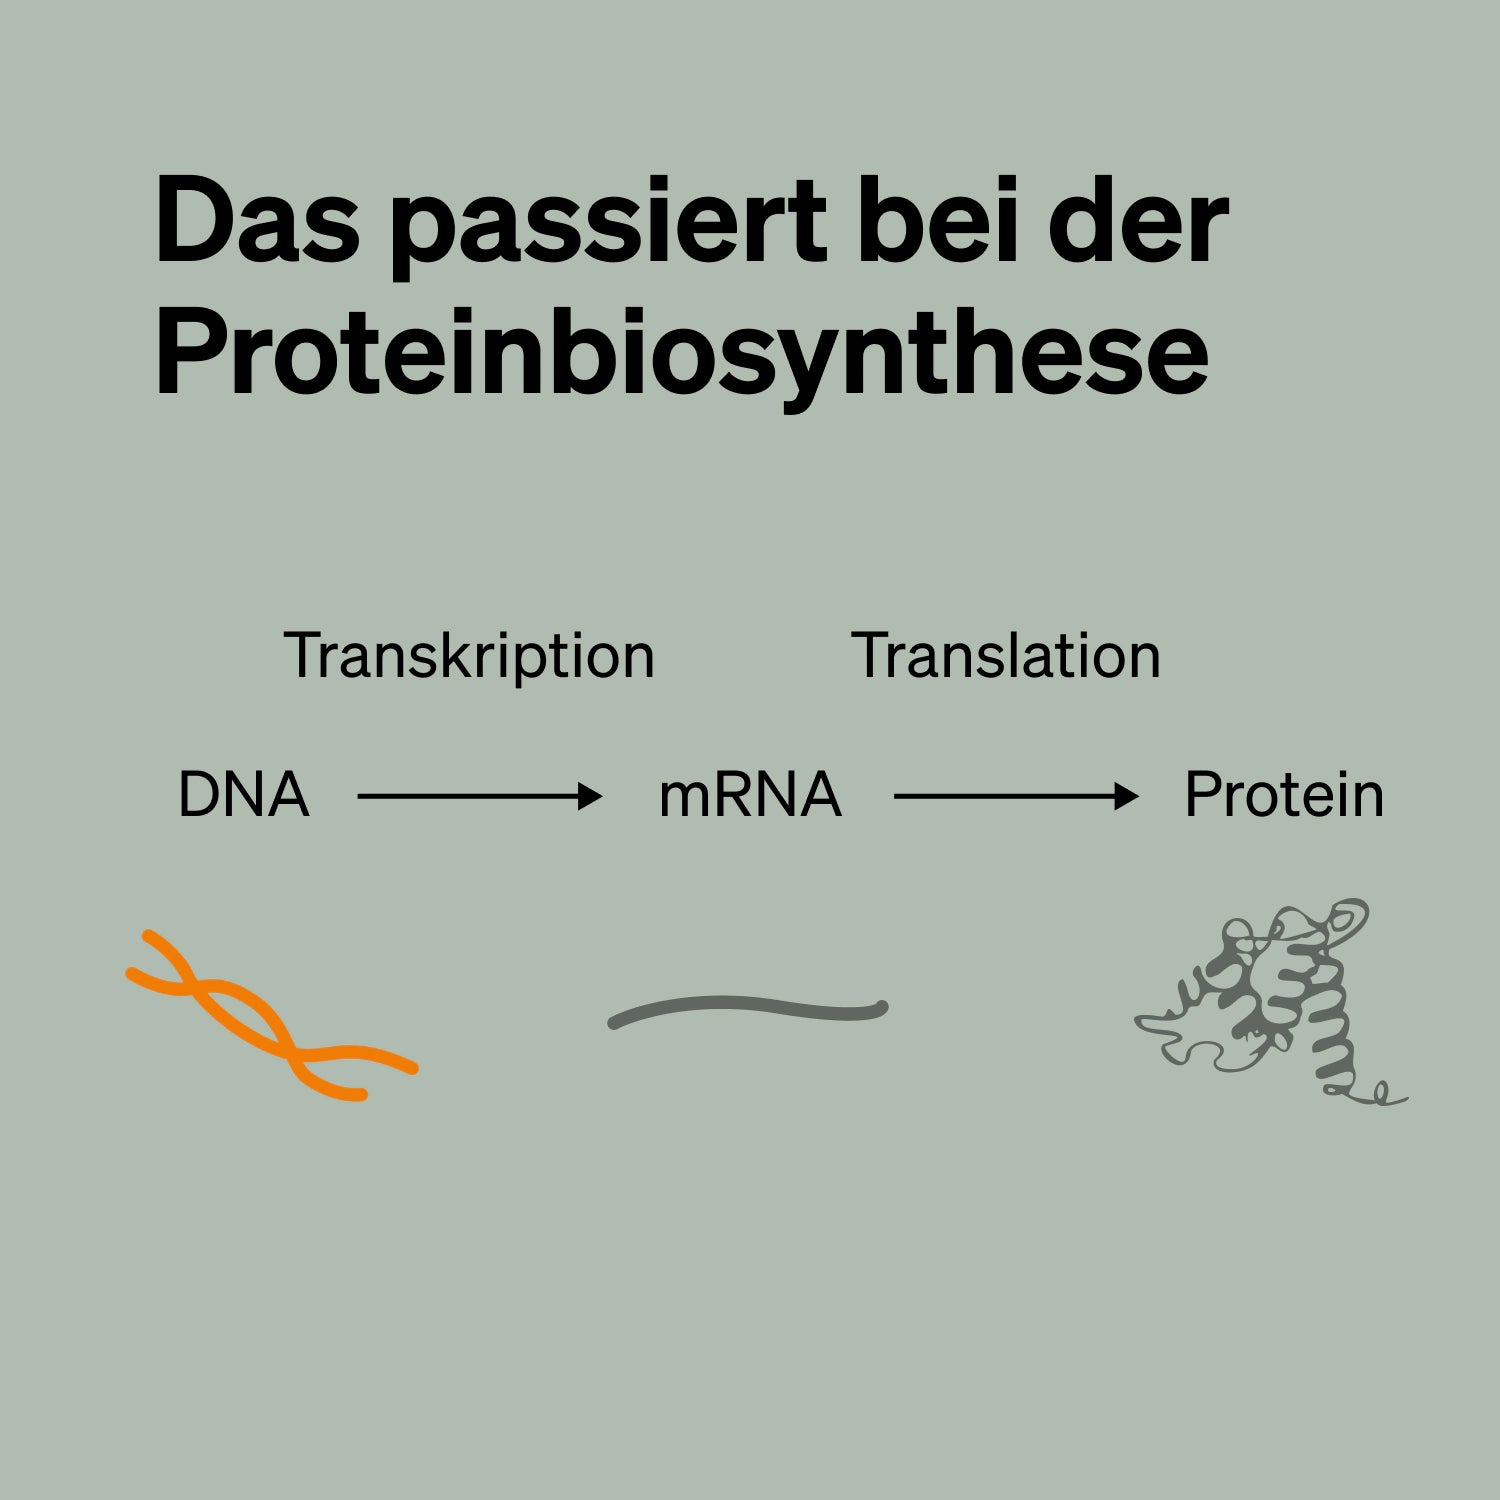 Das passiert bei der Proteinbiosynthese